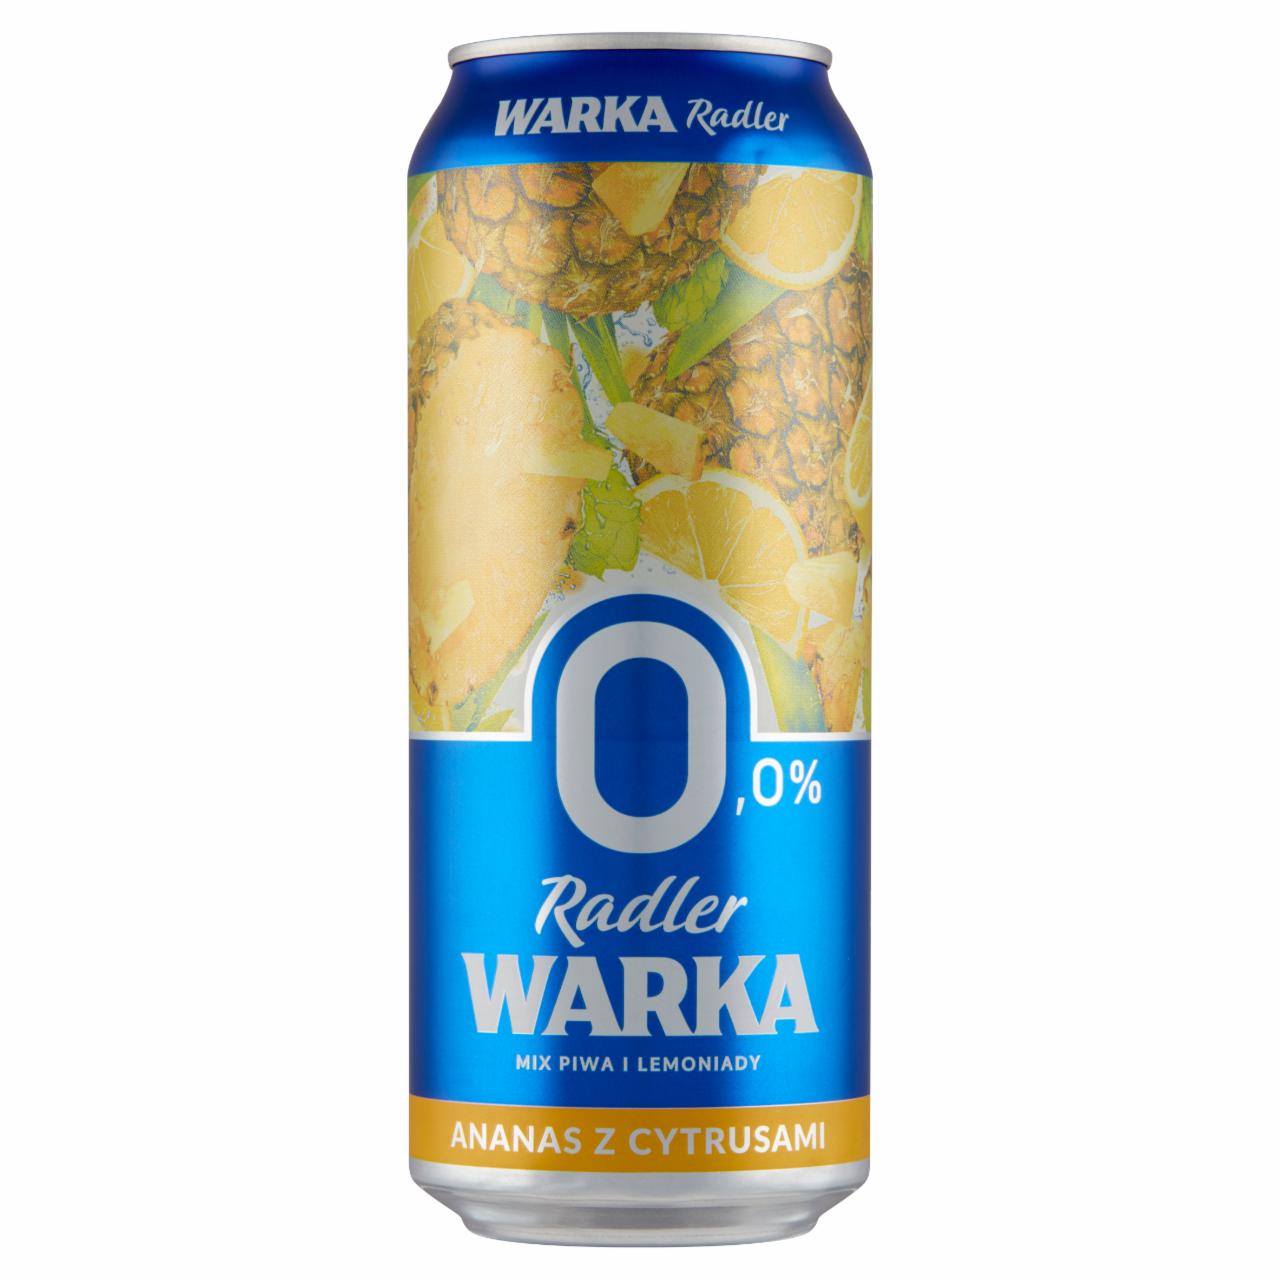 Zdjęcia - Warka Radler Piwo bezalkoholowe z lemoniadą o smaku ananasa z cytrusami 500 ml